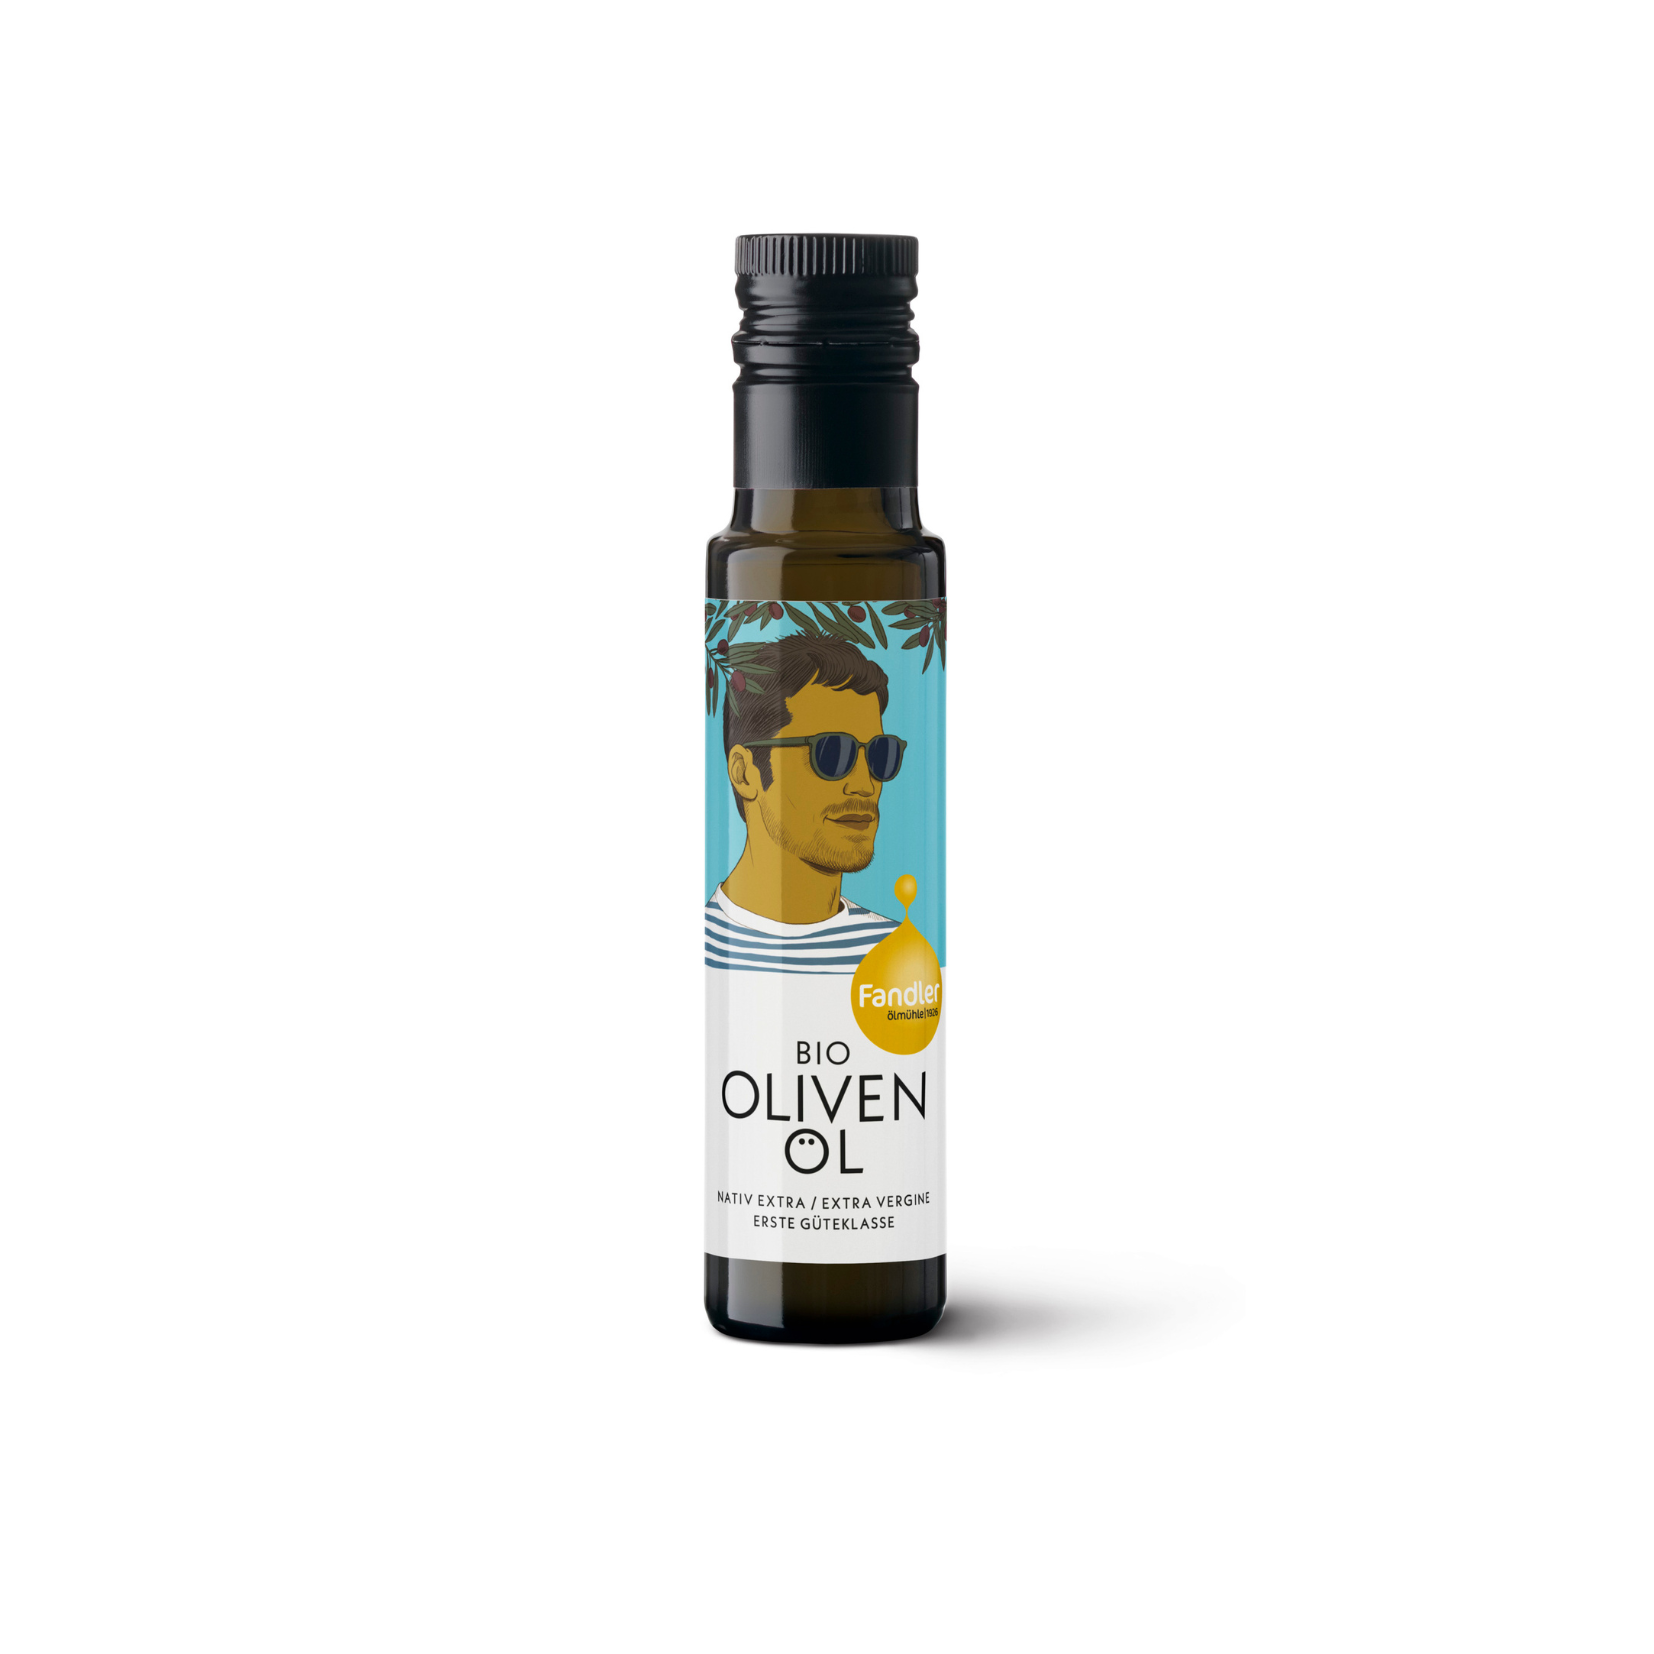 Durchsichtige dunkelgrüne Glasflasche mit schwarzer Verschlusskappe und weißem Etikett des Öhlmühle Fandler Bio Olivenöl.